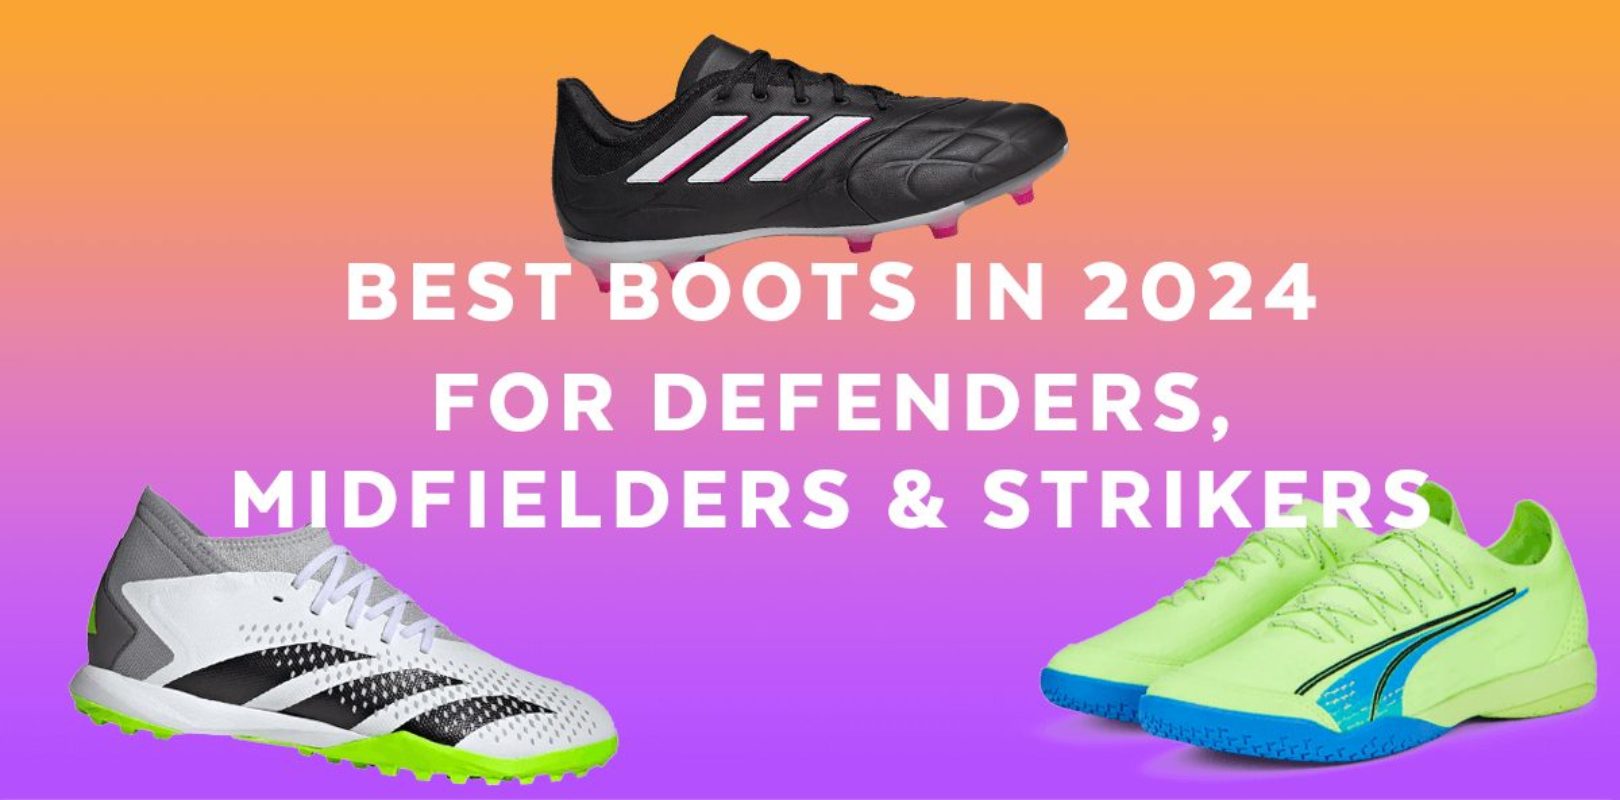 Best football boots for defenders, midfielders & strikers in 2024